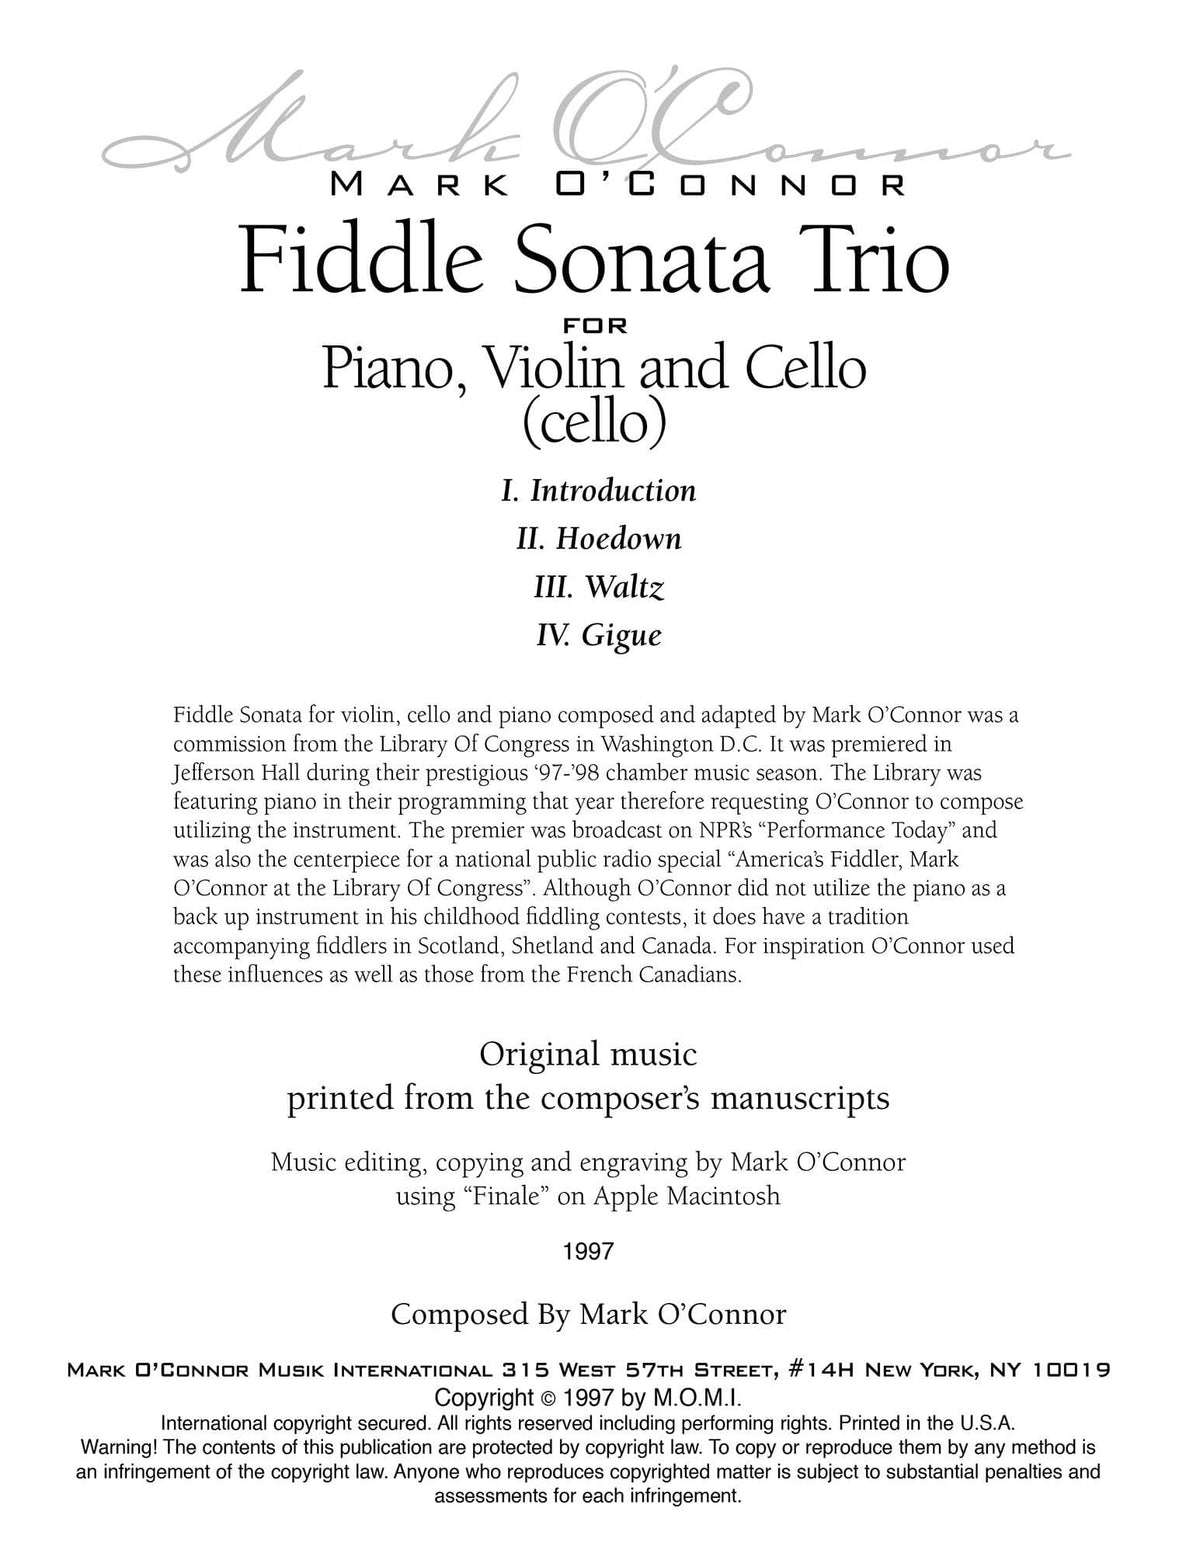 O'Connor, Mark - Fiddle Sonata Trio for Piano, Violin, and Cello - Cello - Digital Download